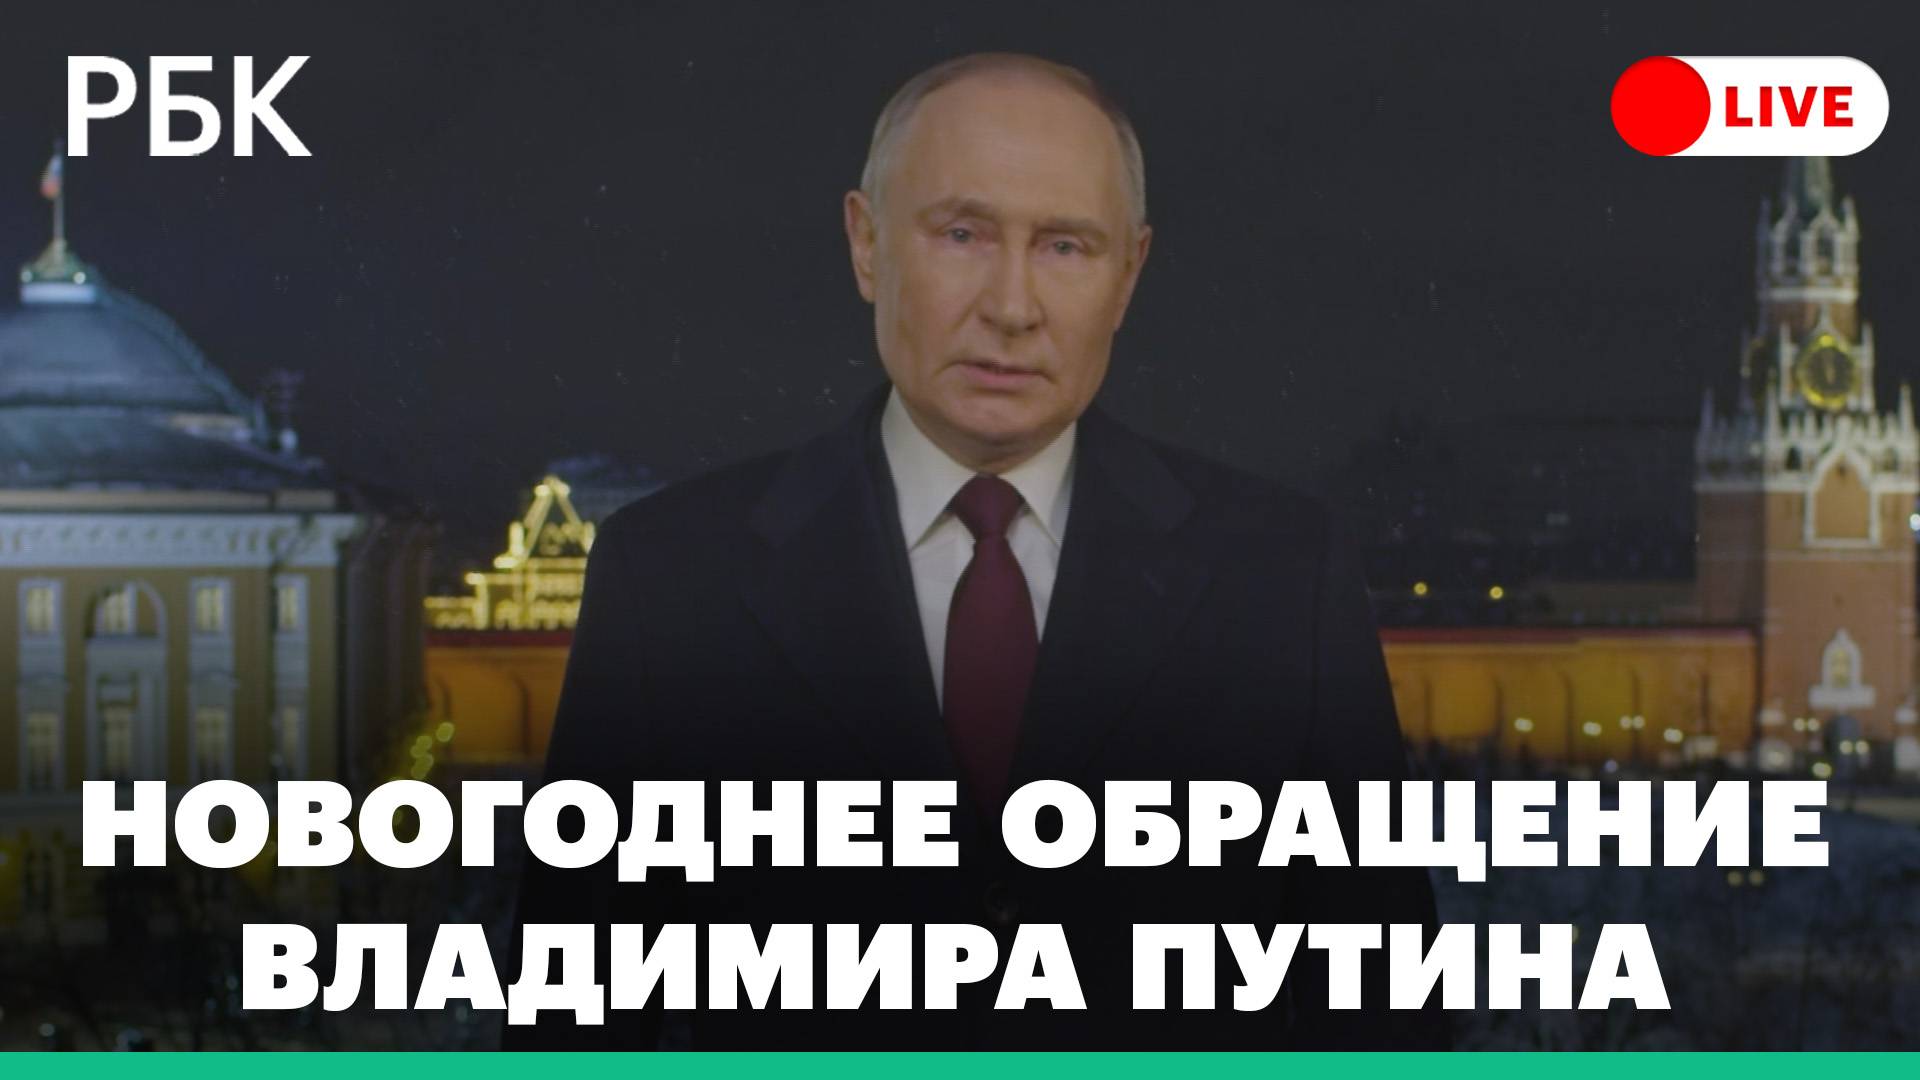 Новогоднее обращение Владимира Путина. Прямая трансляция